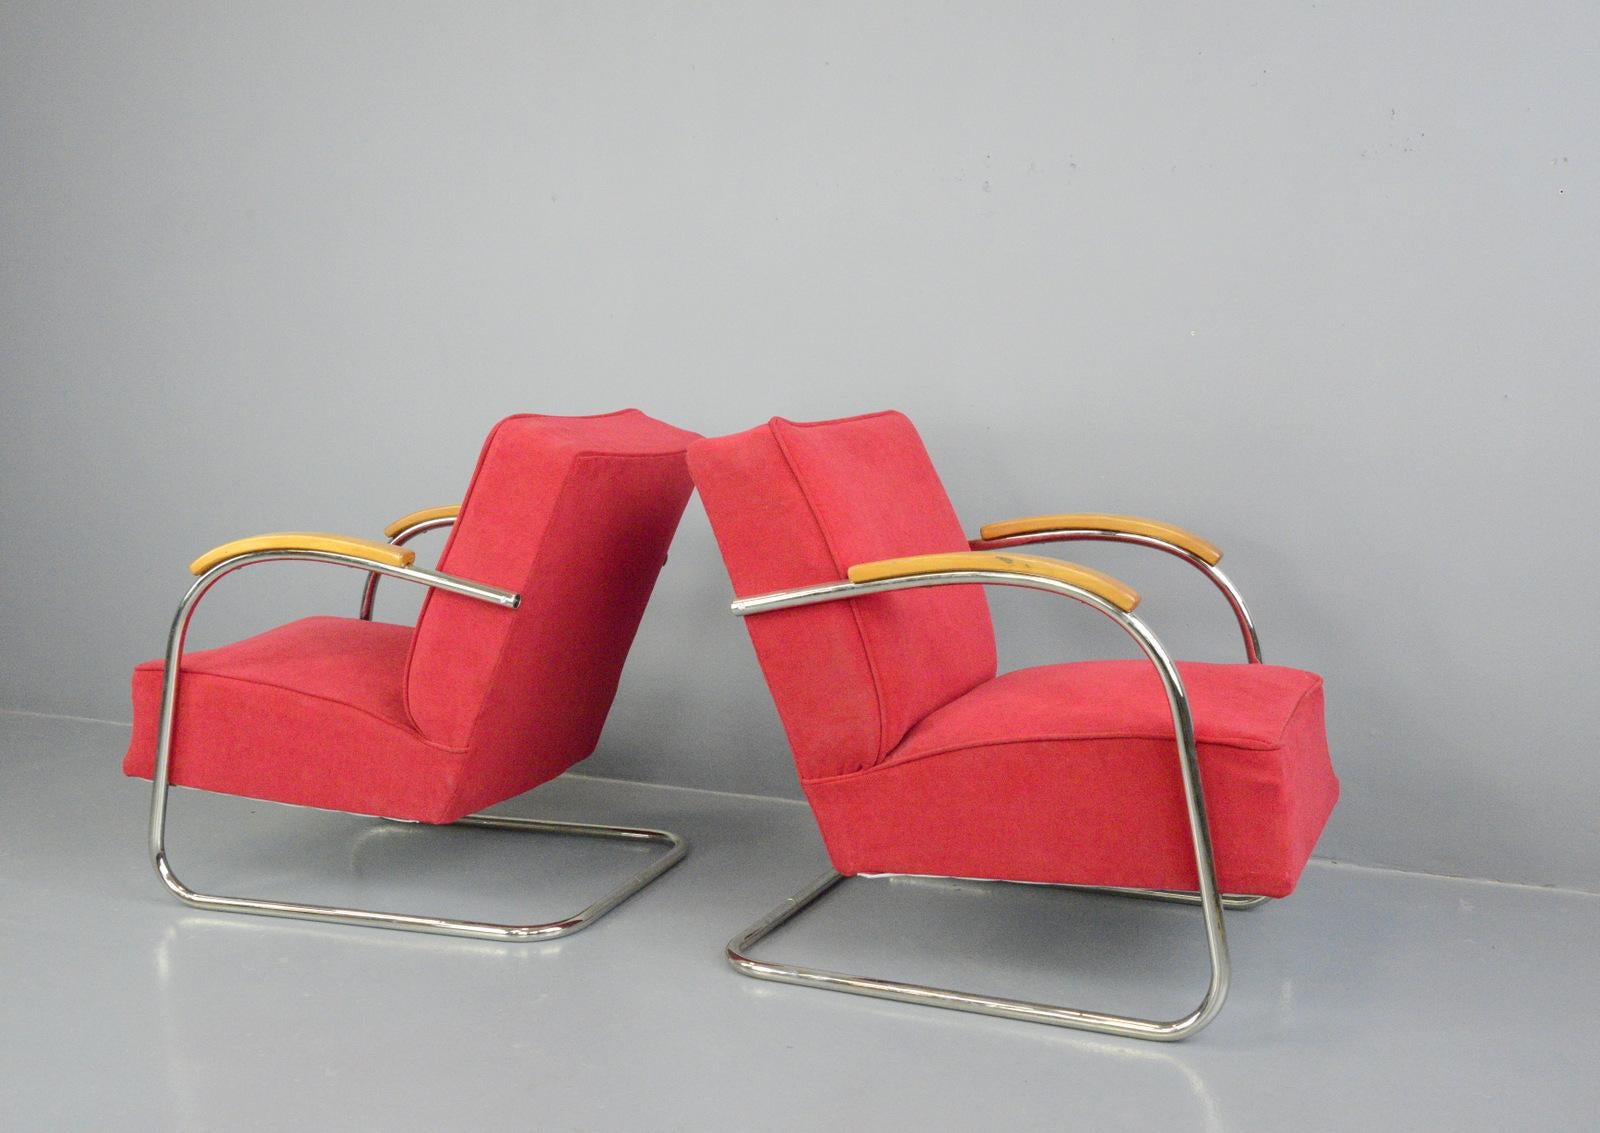 Steel Bauhaus Armchairs by Mucke Melder, circa 1930s For Sale